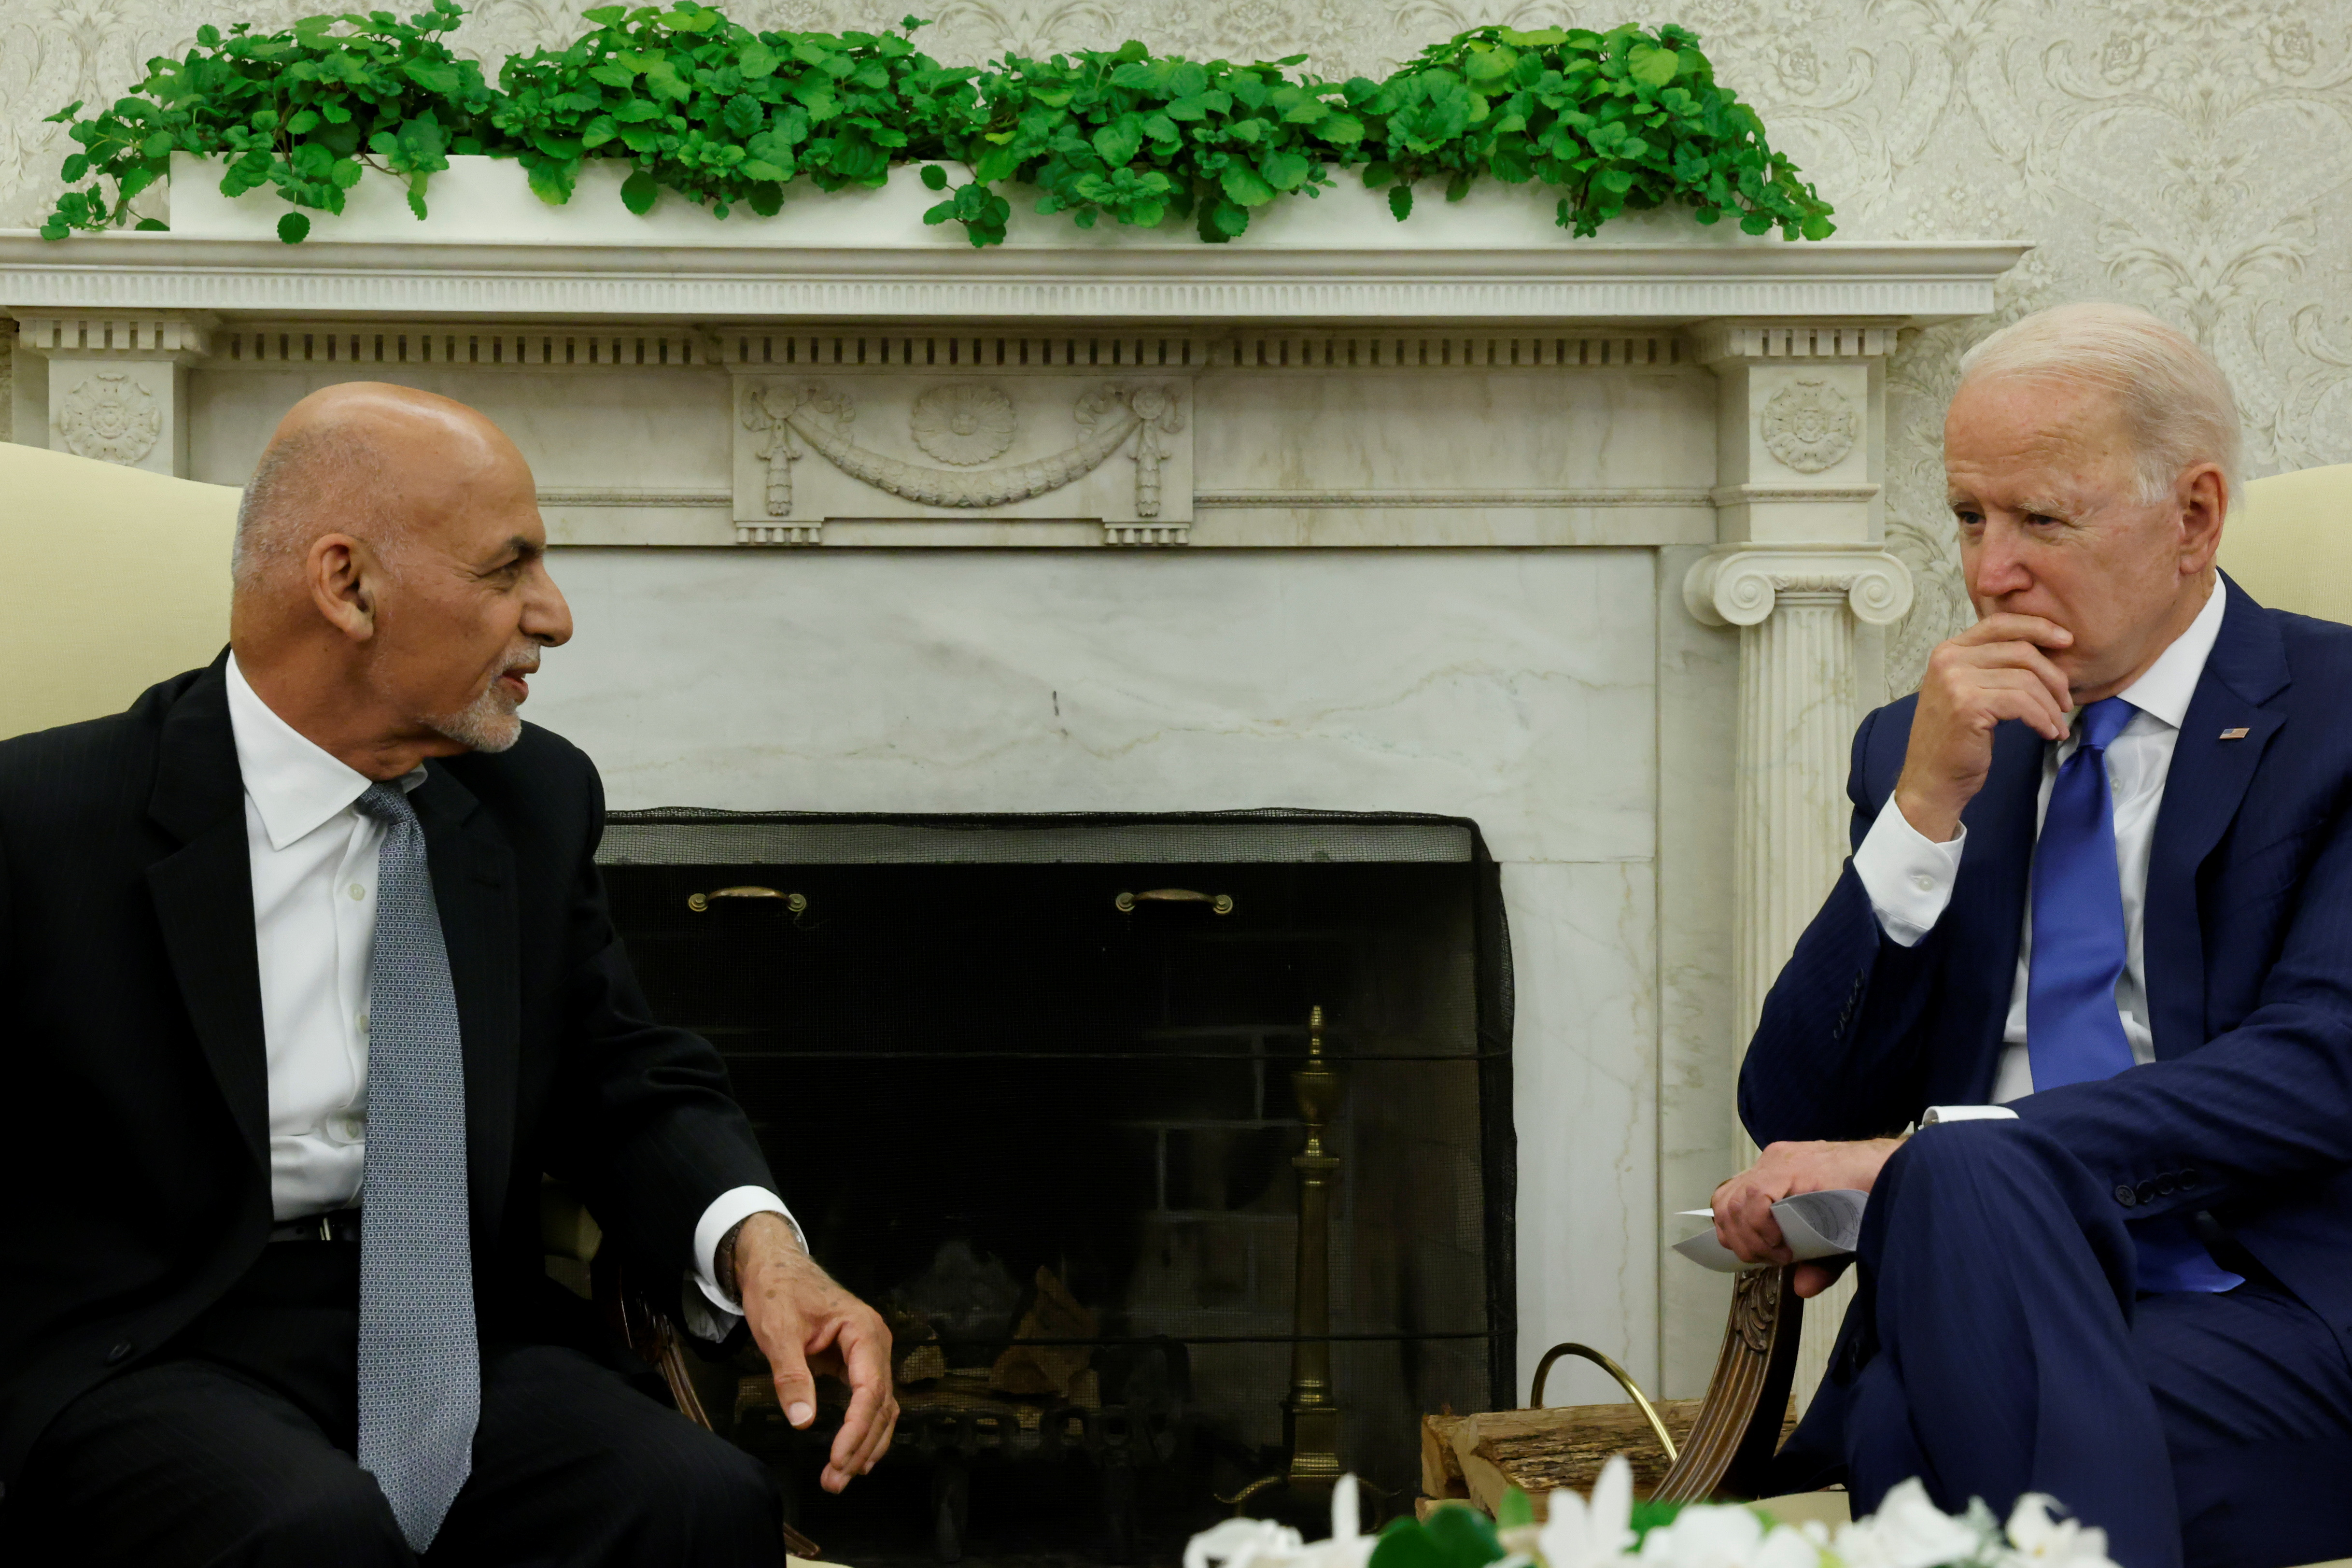 U.S. President Biden meets with Afghan President Ghani